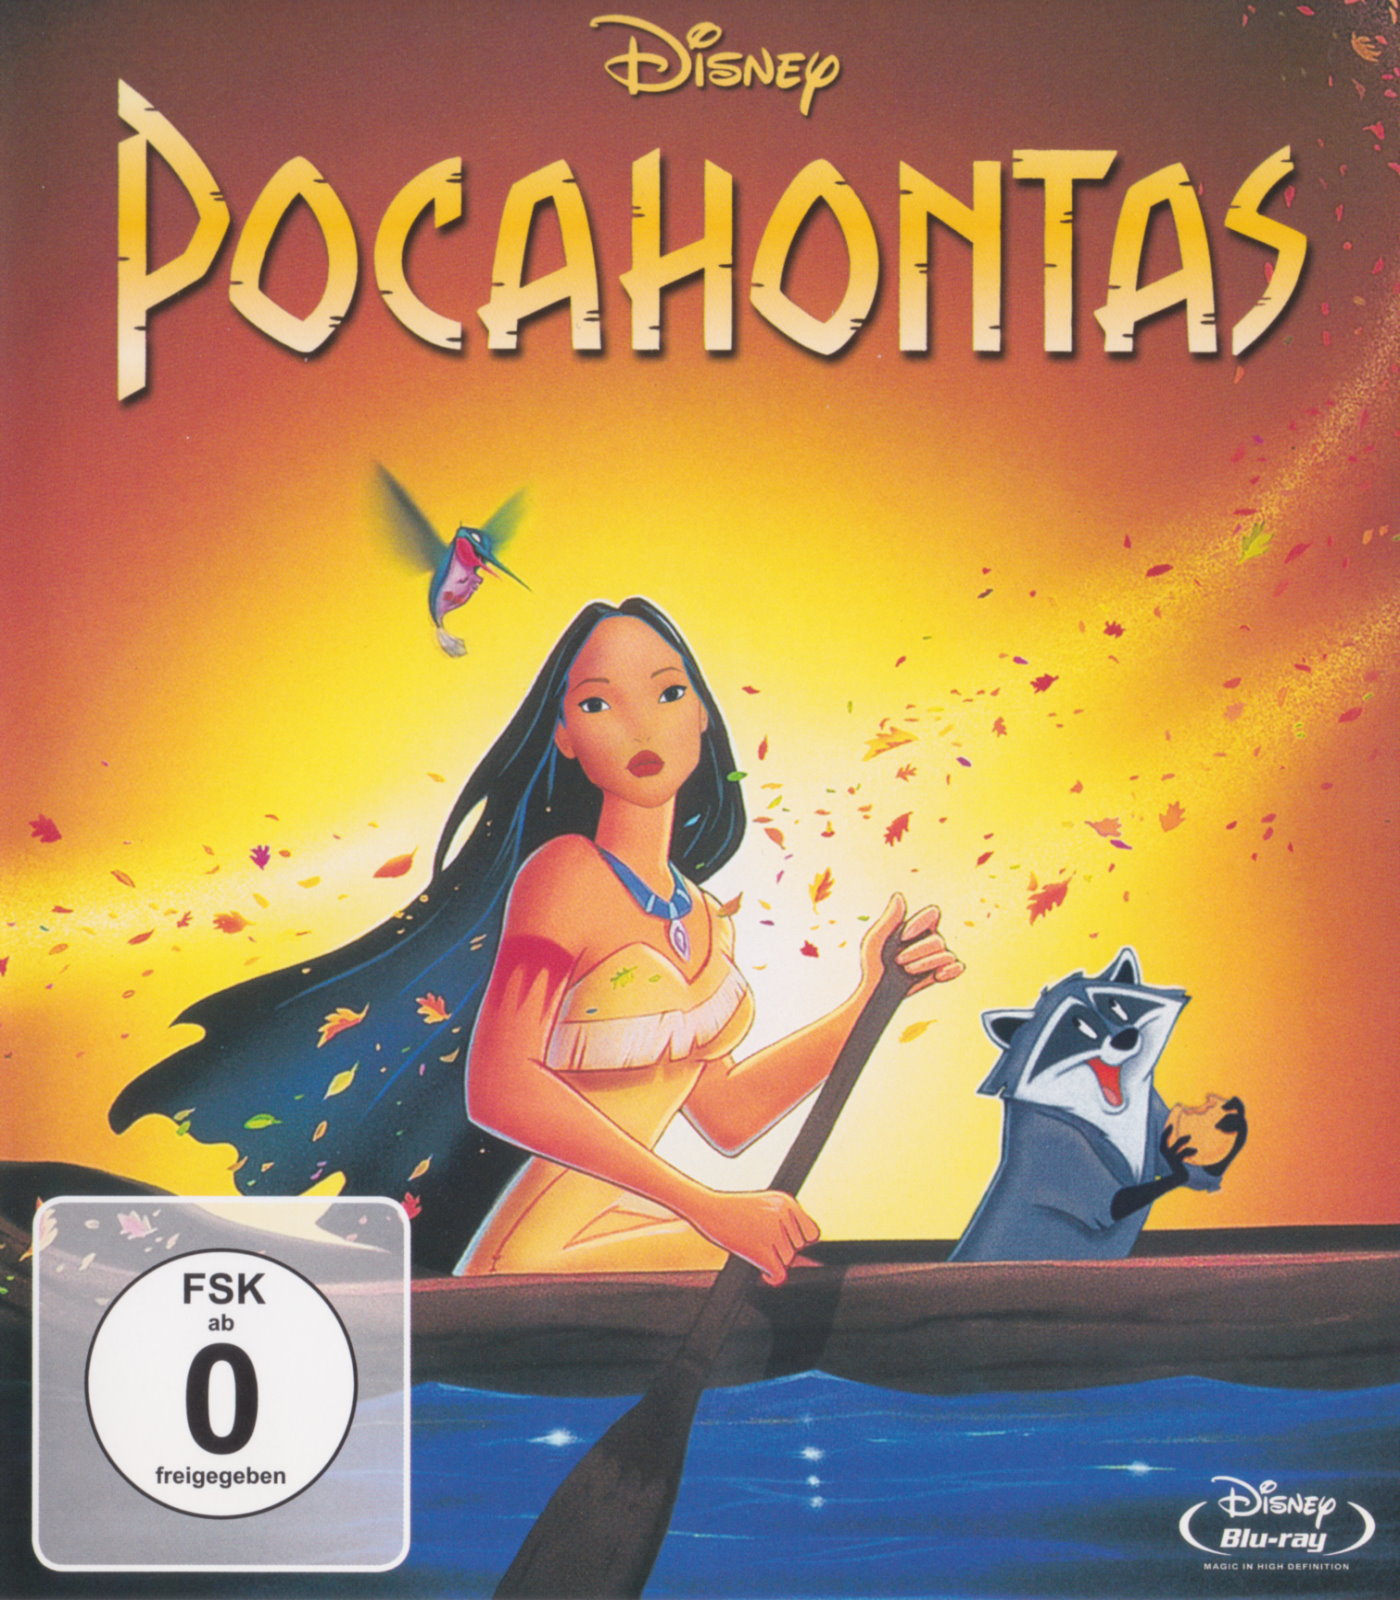 Cover - Pocahontas - Eine indianische Legende.jpg